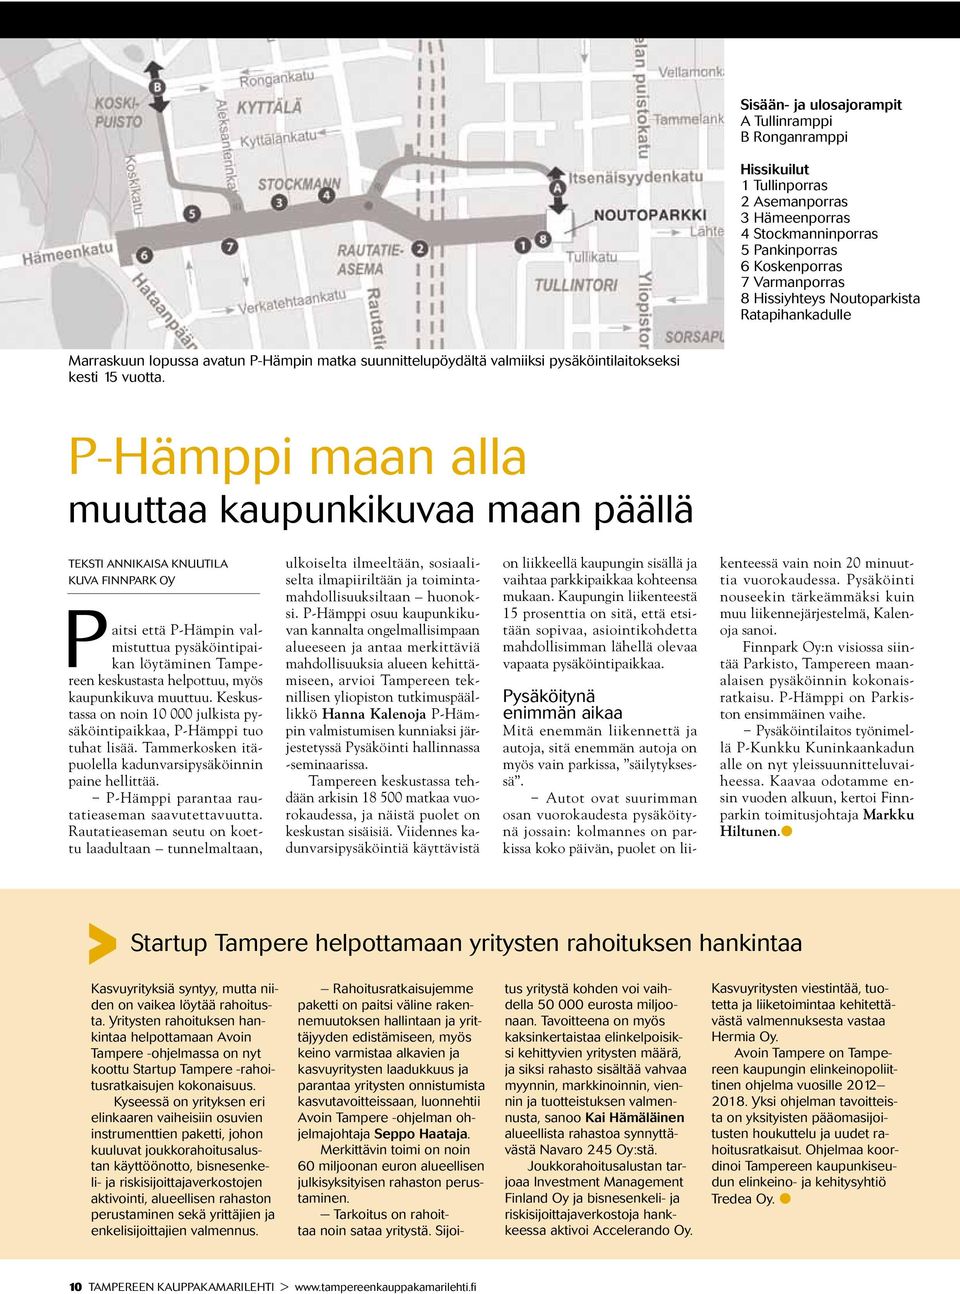 P-Hämppi maan alla muuttaa kaupunkikuvaa maan päällä Teksti Annikaisa Knuutila Kuva Finnpark Oy Paitsi että P-Hämpin valmistuttua pysäköintipaikan löytäminen Tampereen keskustasta helpottuu, myös